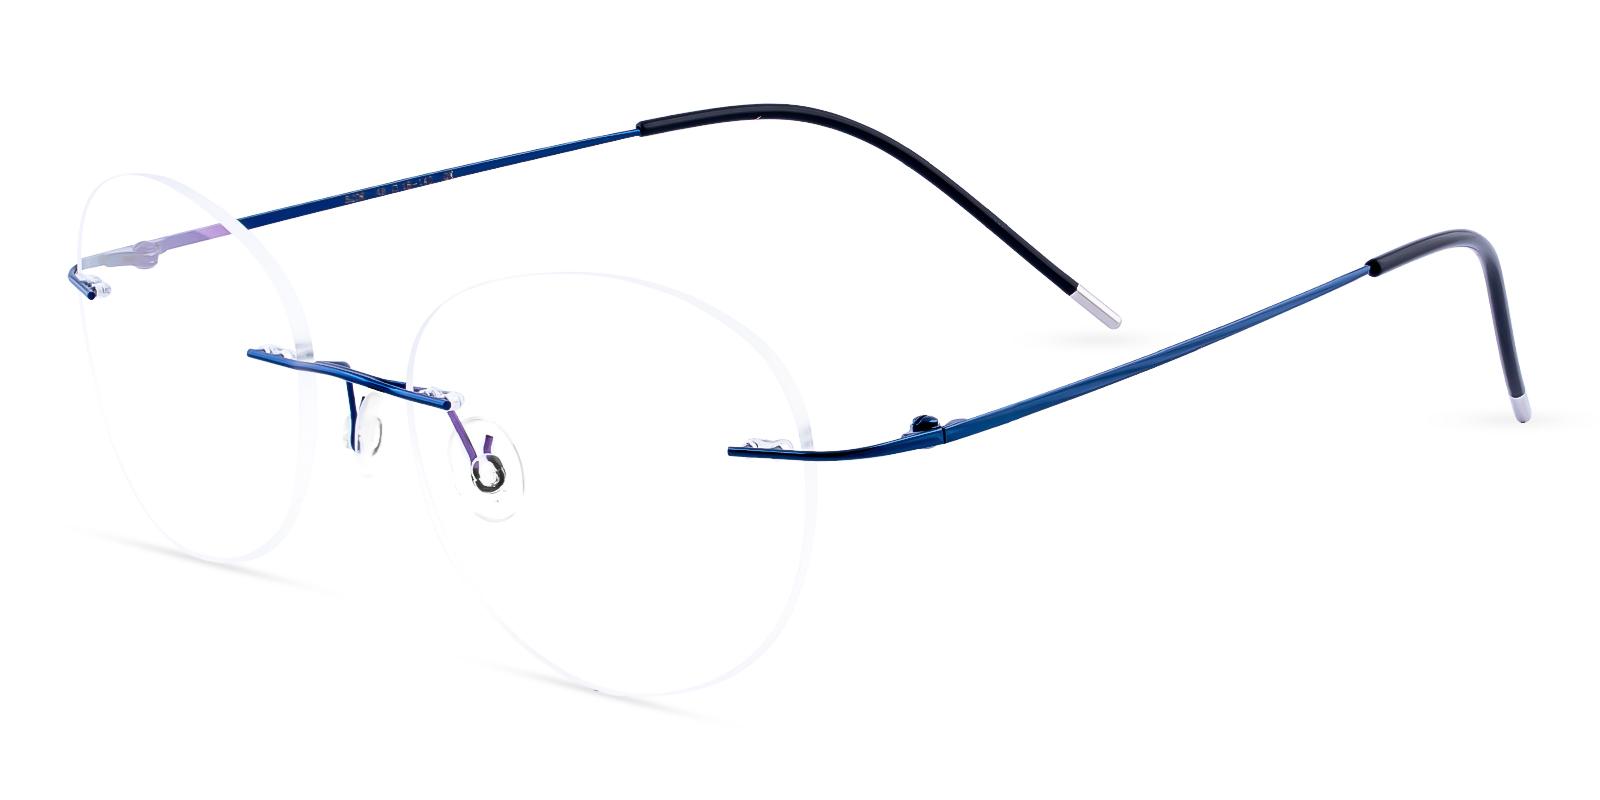 Terrace Park Blue Metal Eyeglasses , NosePads Frames from ABBE Glasses